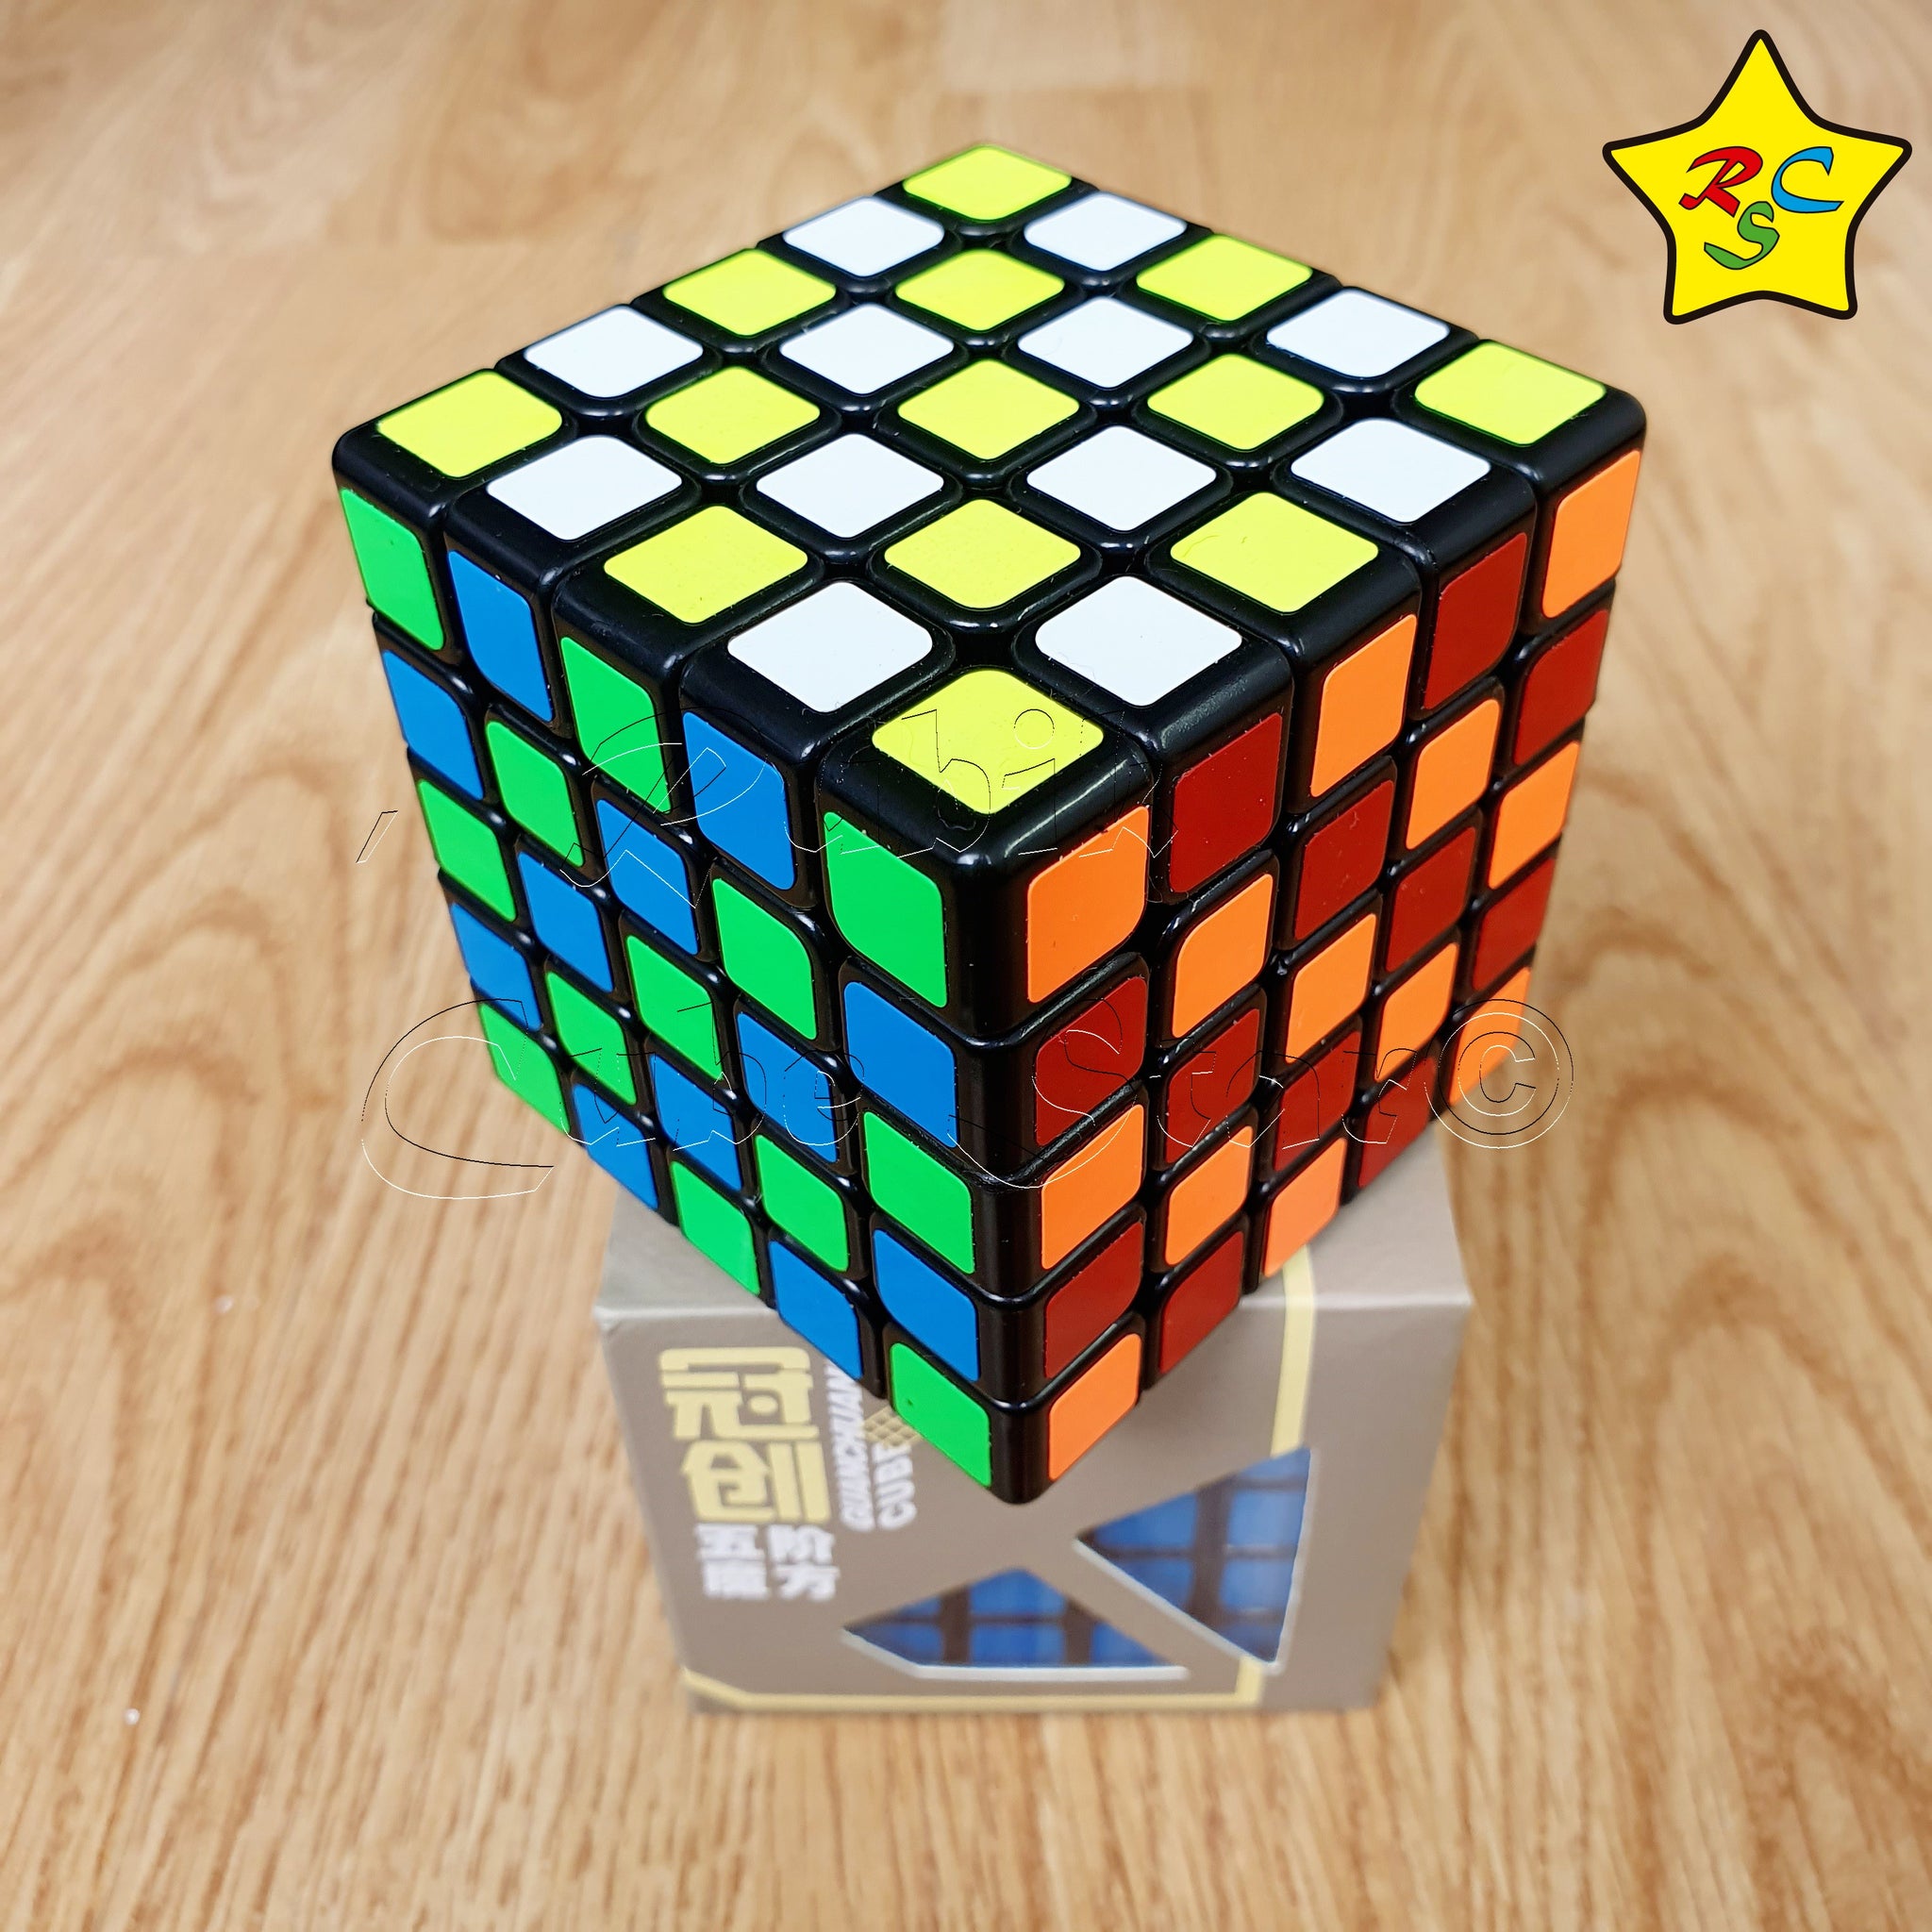 Cubo Rubik De 5x5 Cubo Rubik 5x5 Moyu Yj Guanchuang Negro Stickers Speedcube – Rubik Cube Star